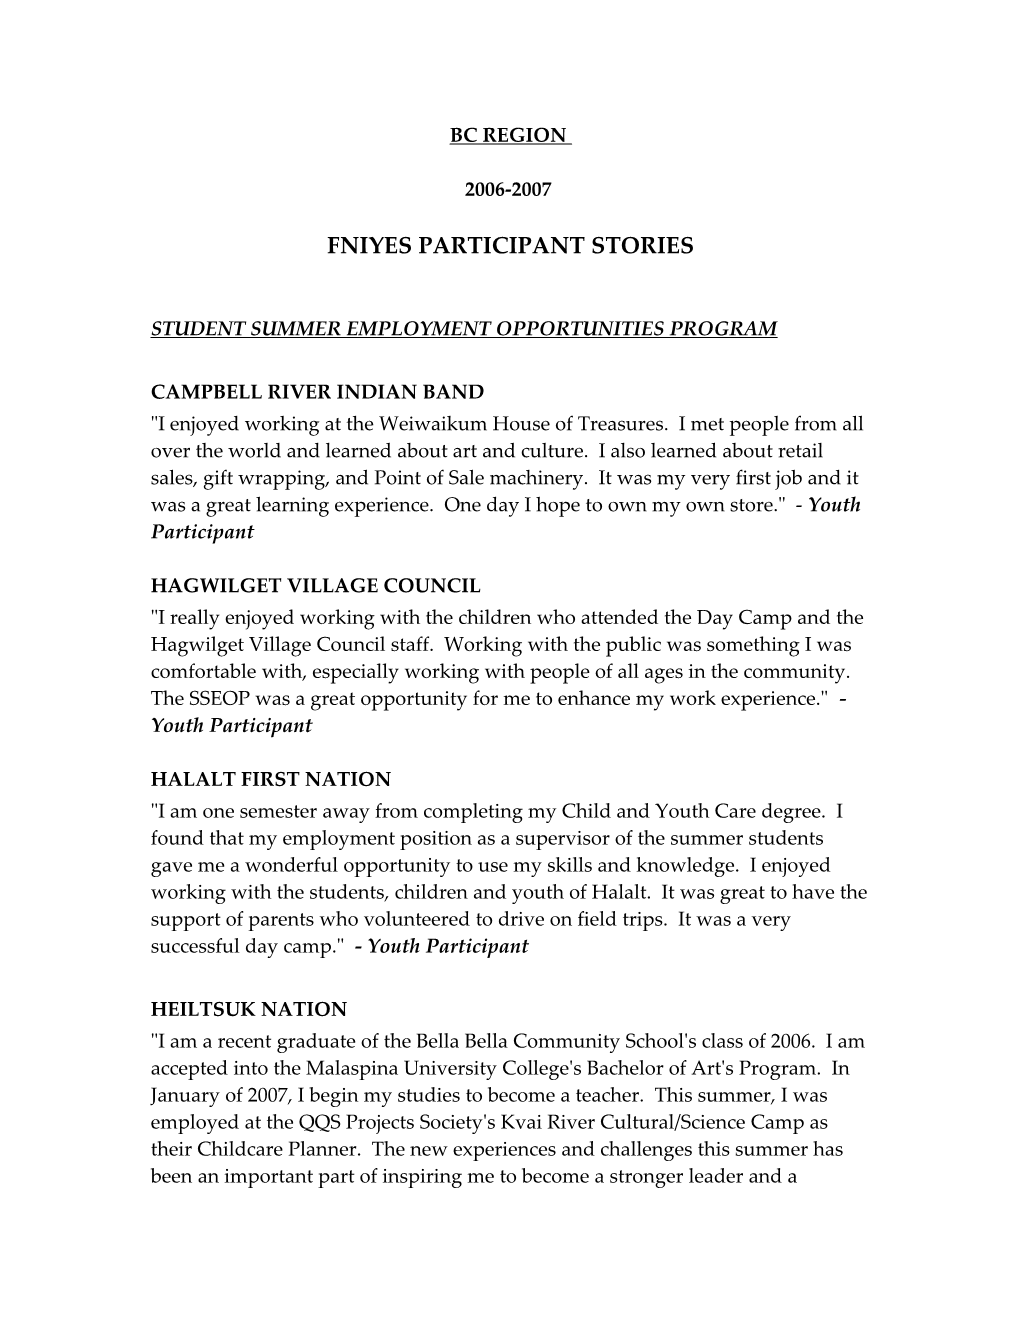 Student Summer Employment Opportunities Program